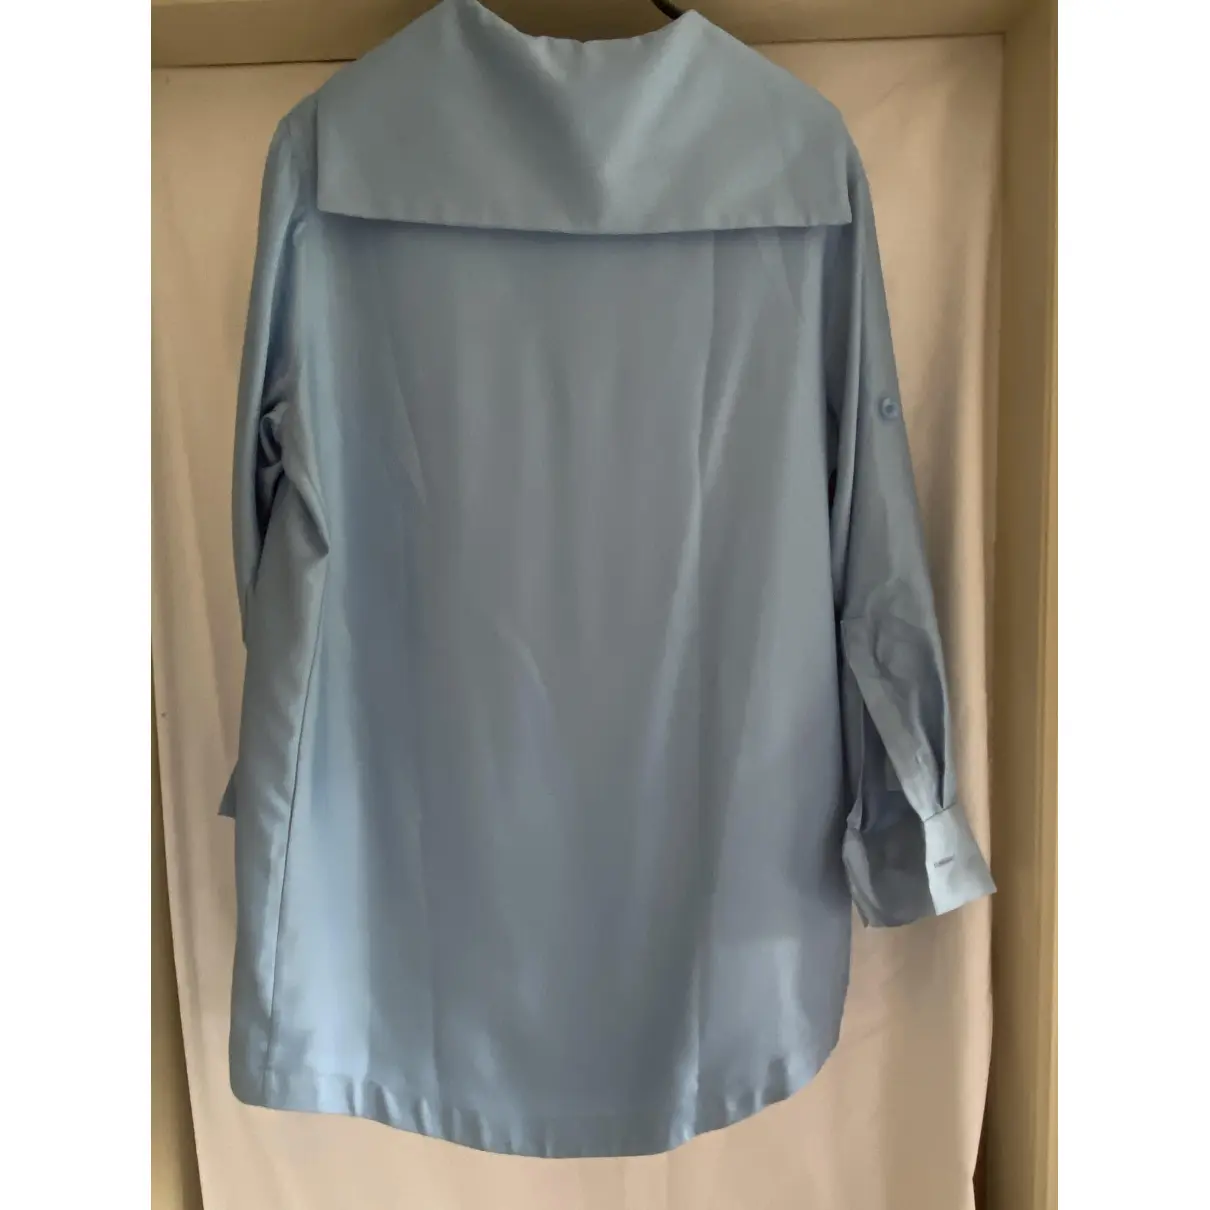 Buy Zoe Jordan Silk blouse online